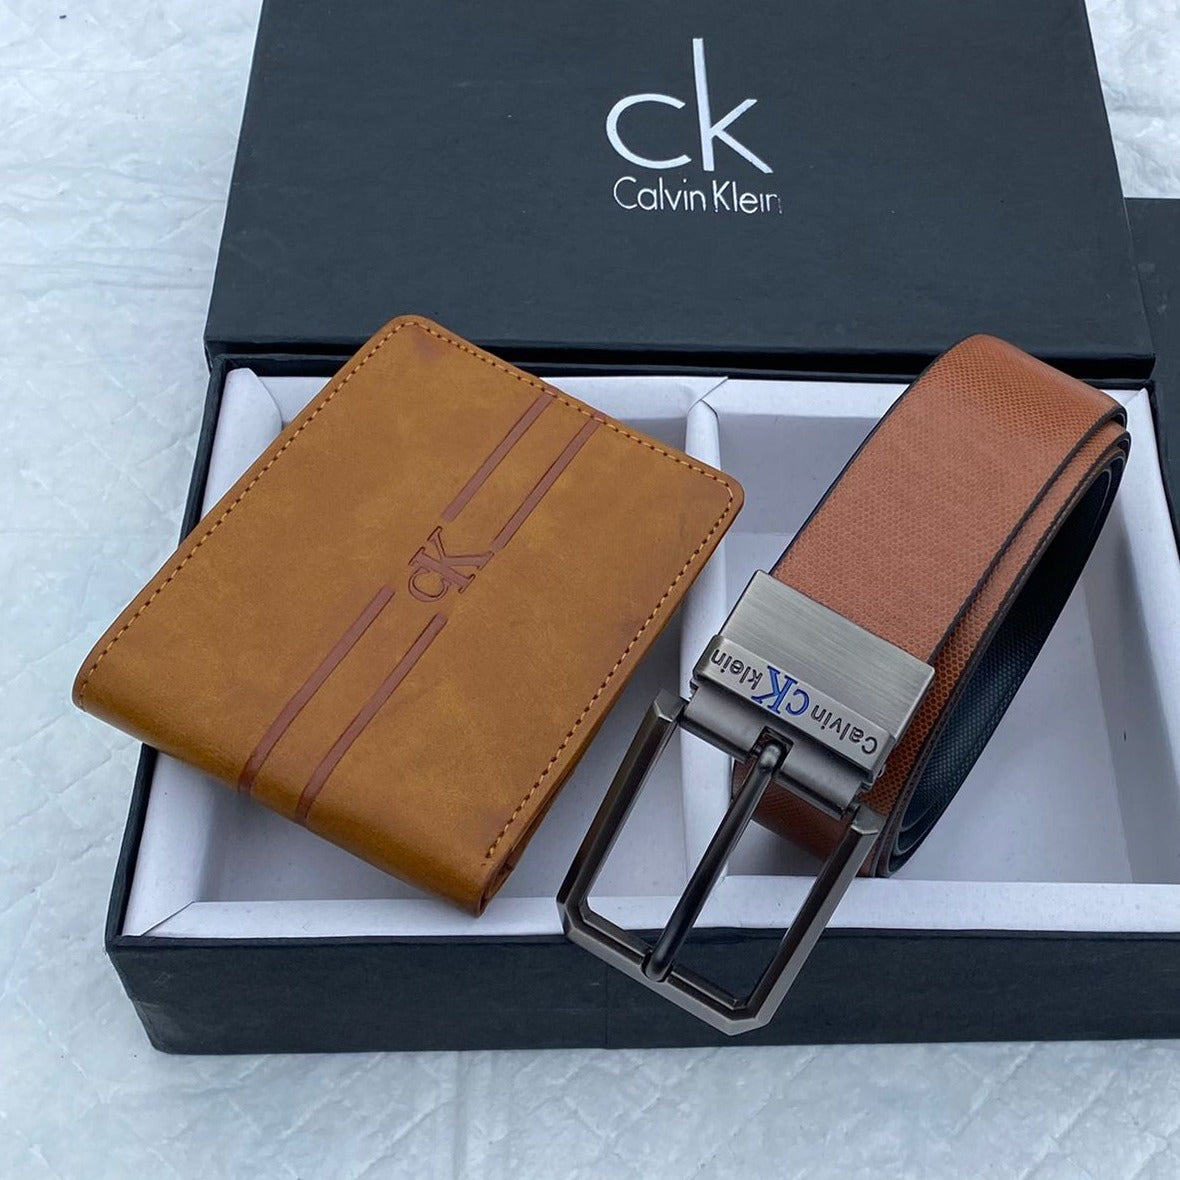 Amazing CK Wallet Belt Combo - AmazingBaba